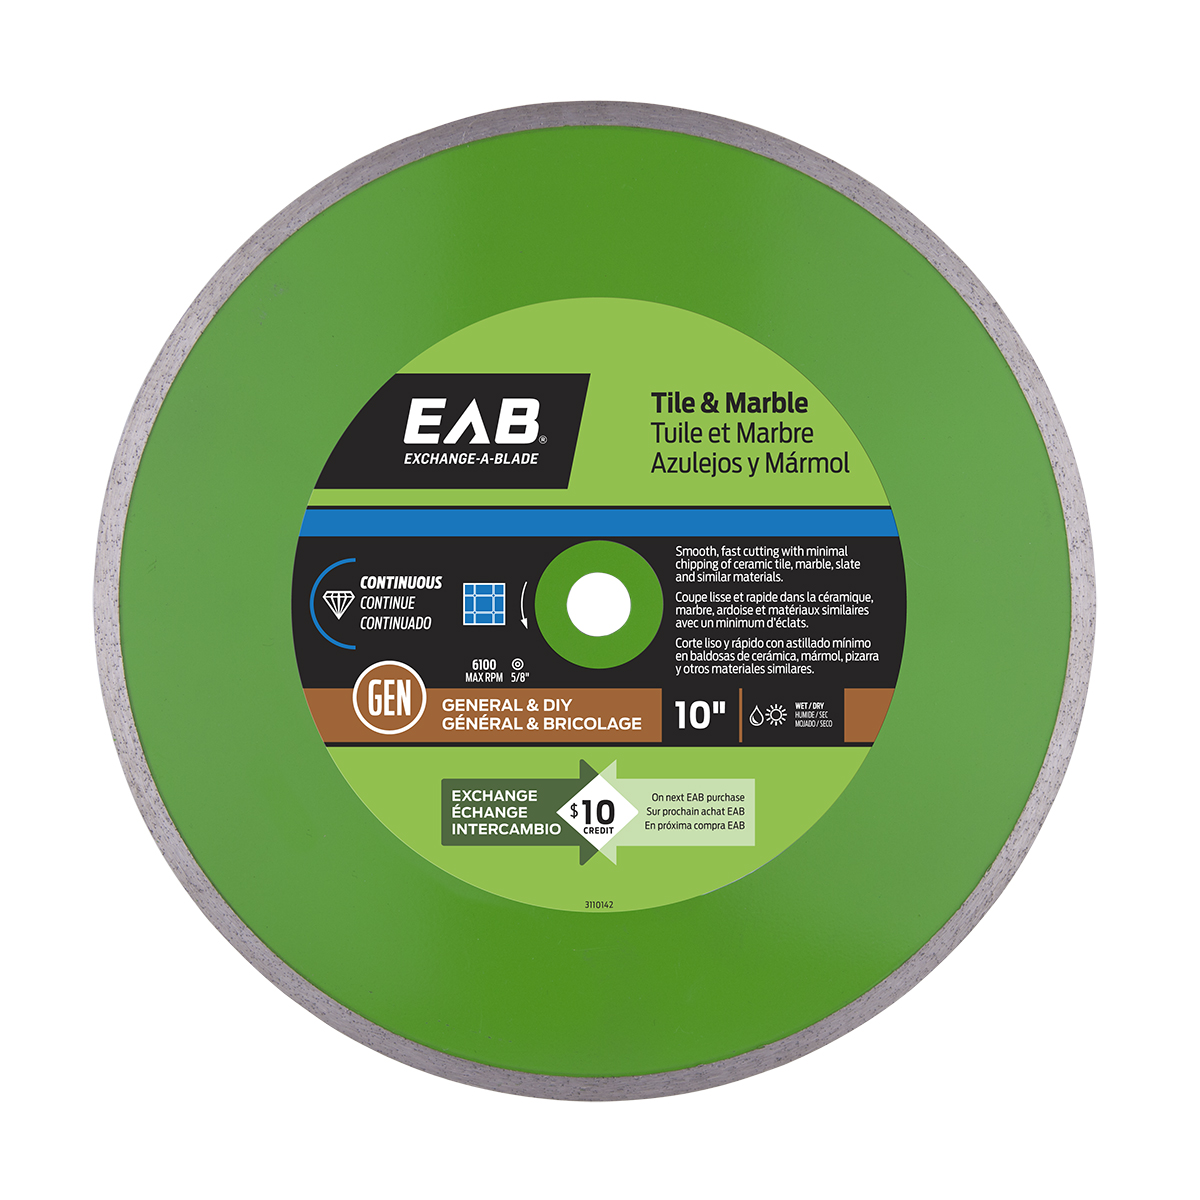 EAB (3110142) product